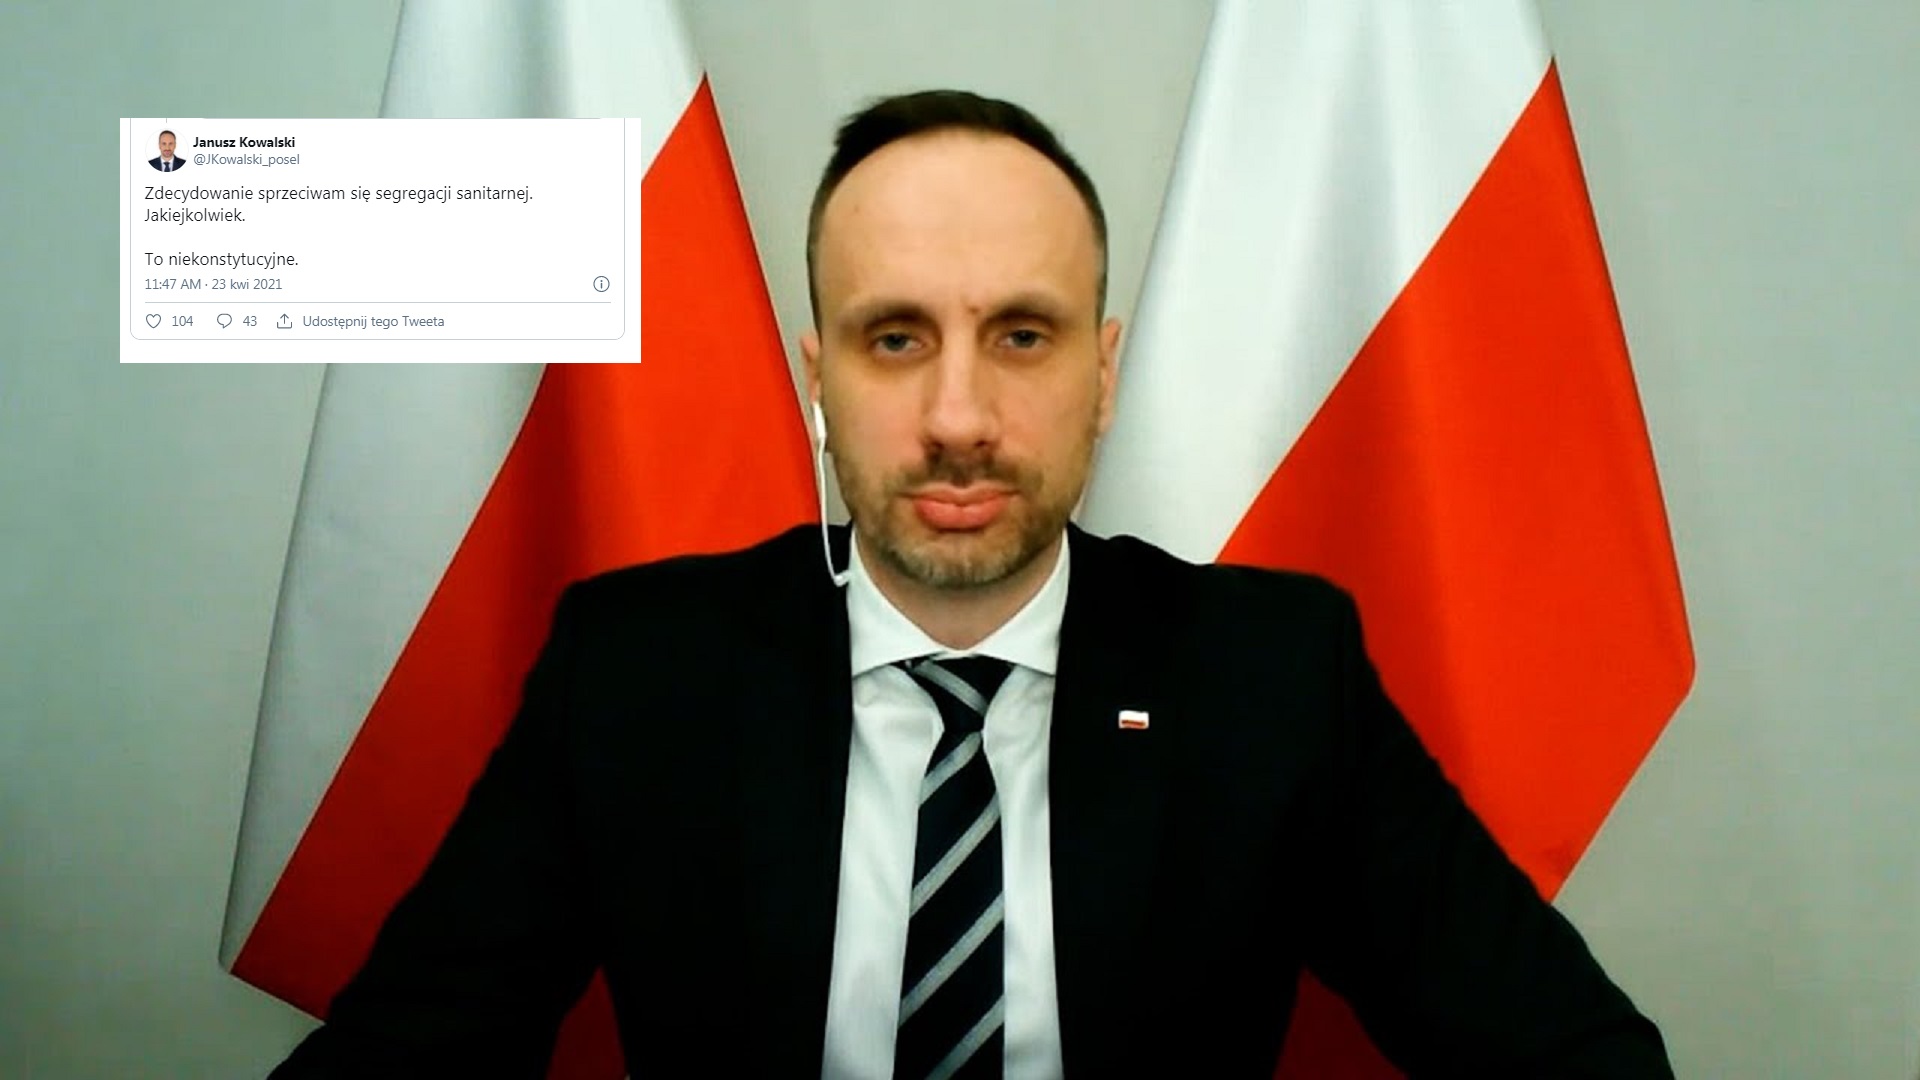 propolski.pl: "To niekonstytucyjne". Janusz Kowalski ostro o szokującym pomyśle Gowina